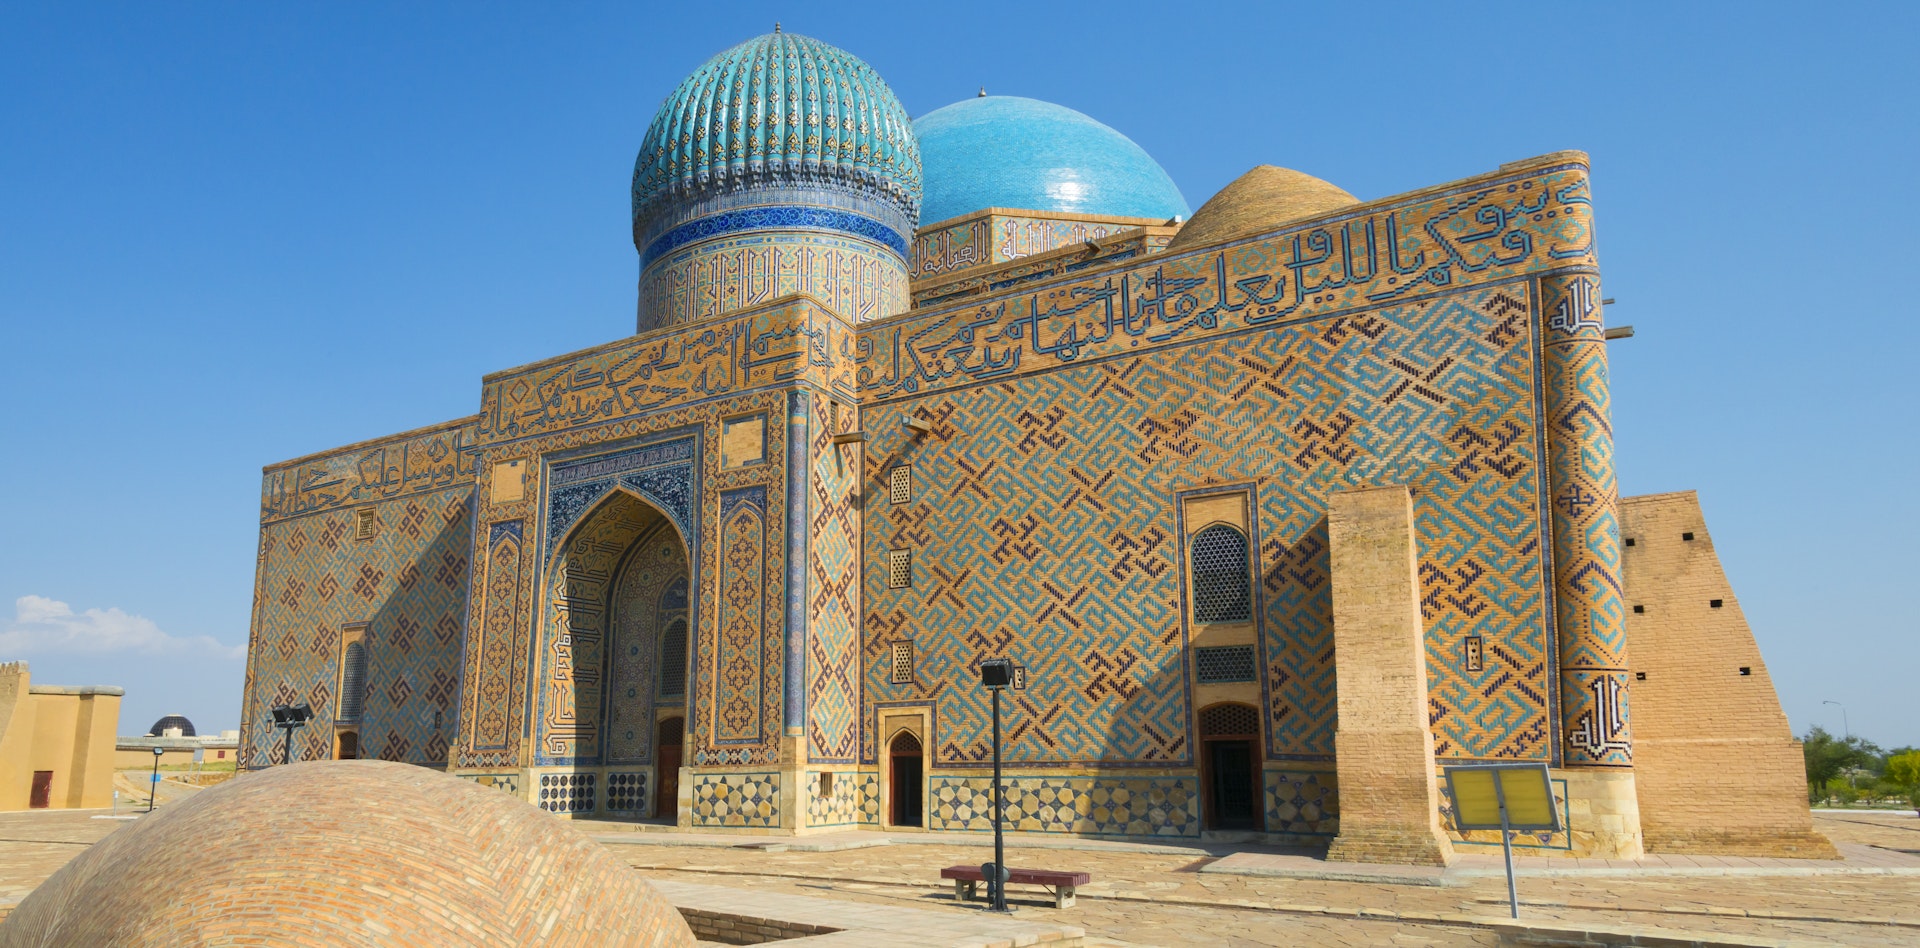 The Mausoleum of Khoja Ahmed Yasawi, Turkestan, Kazakhstan